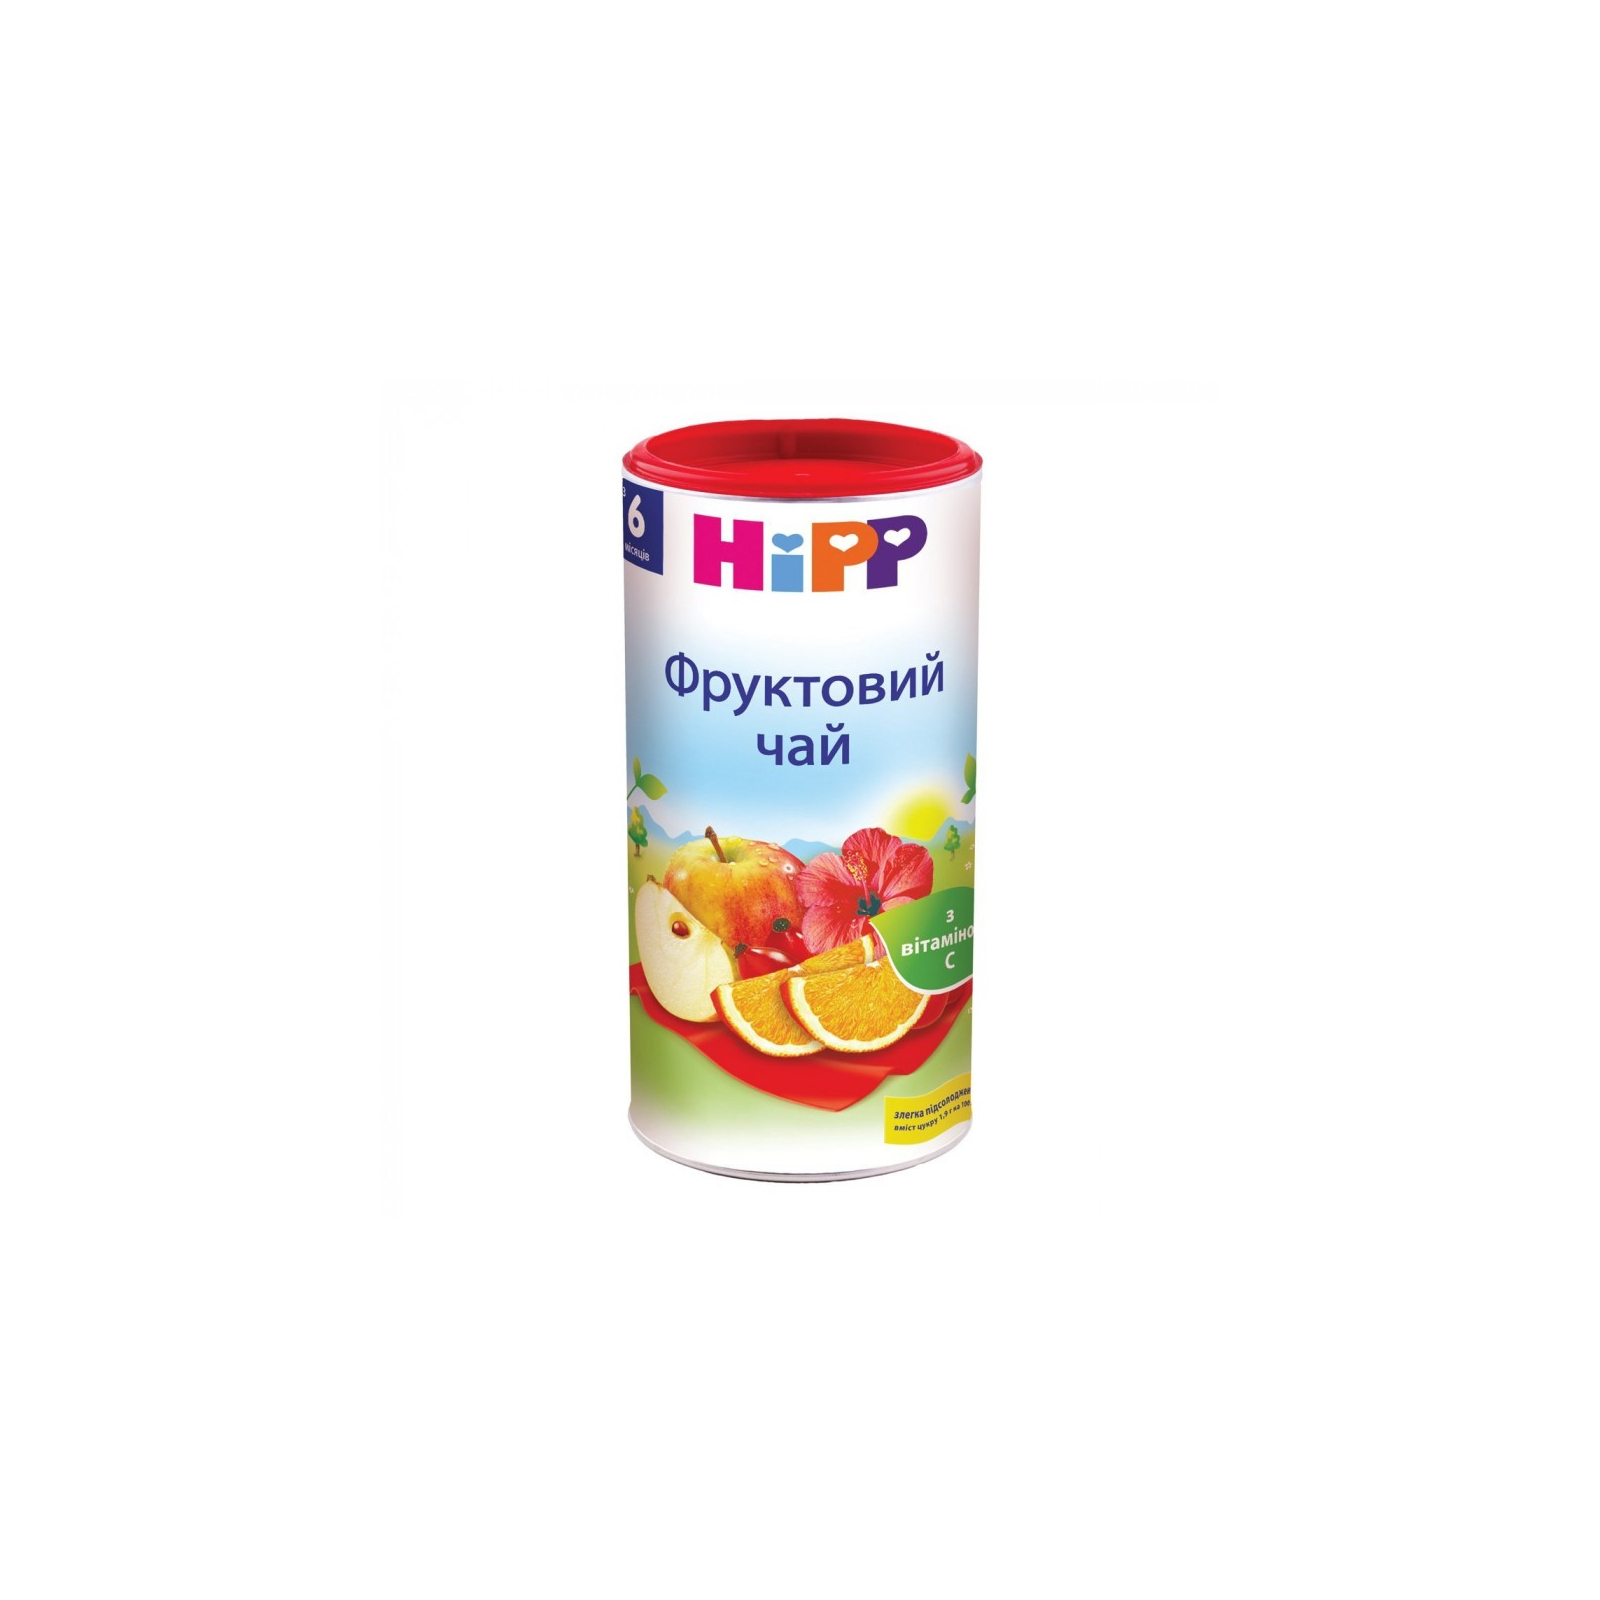 Дитячий чай HiPP фруктовий від 6 міс. 200 гр (9062300103899)